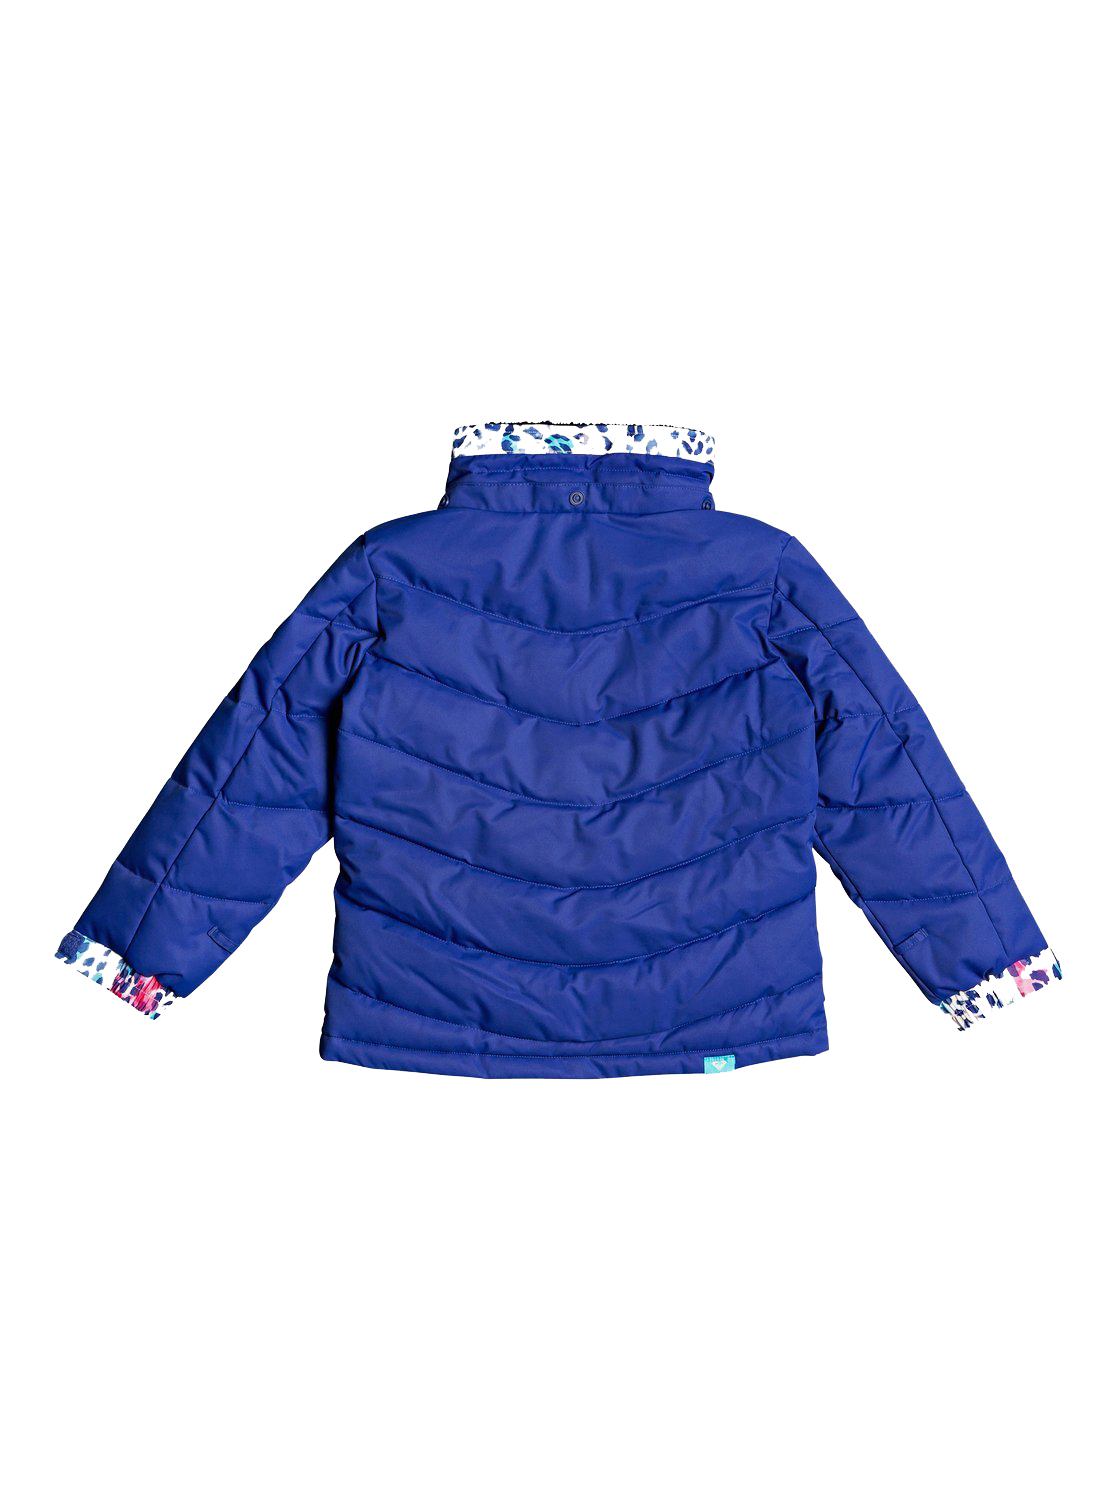 Куртка сноубордическая детская Roxy Anna Mazarine blue